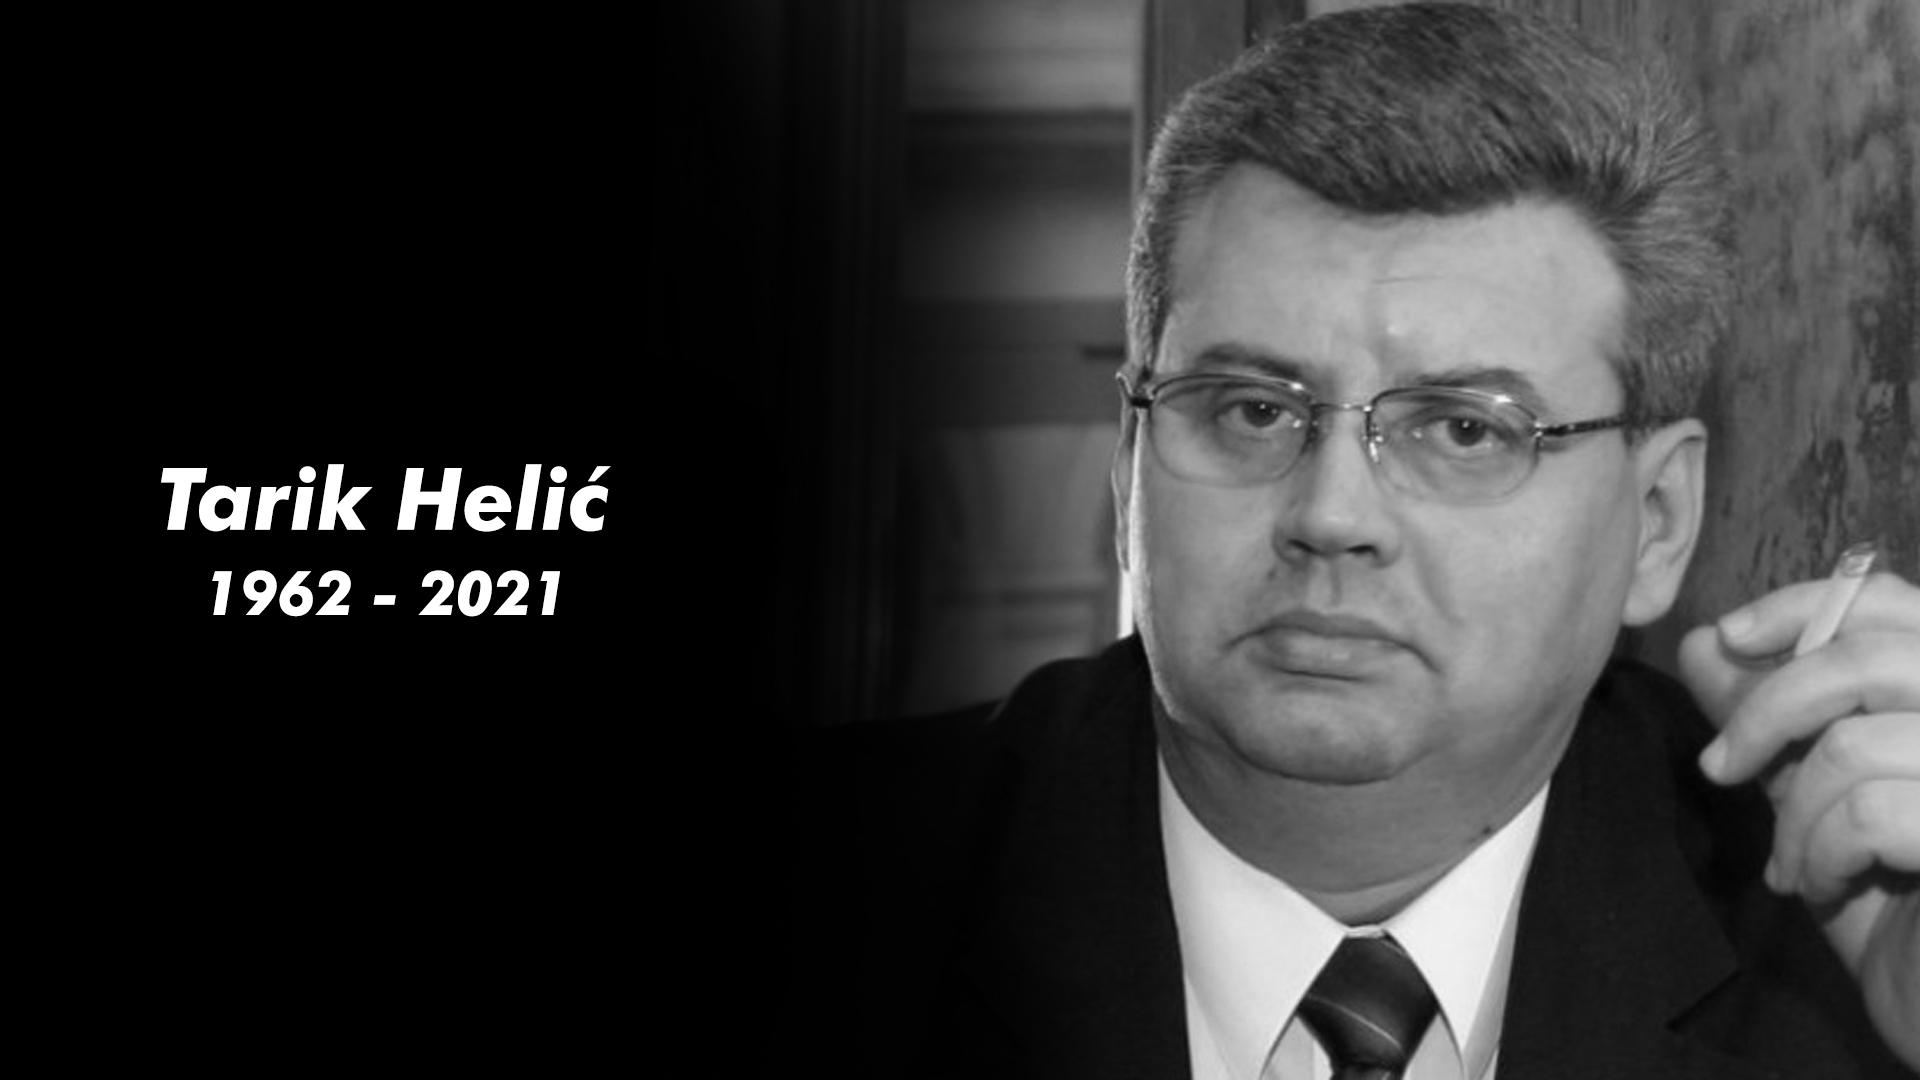 Tužna vijest: Preminuo voditelj Tarik Helić, poznat po pozdravu "Svako dobro Bosno i Hercegovino"